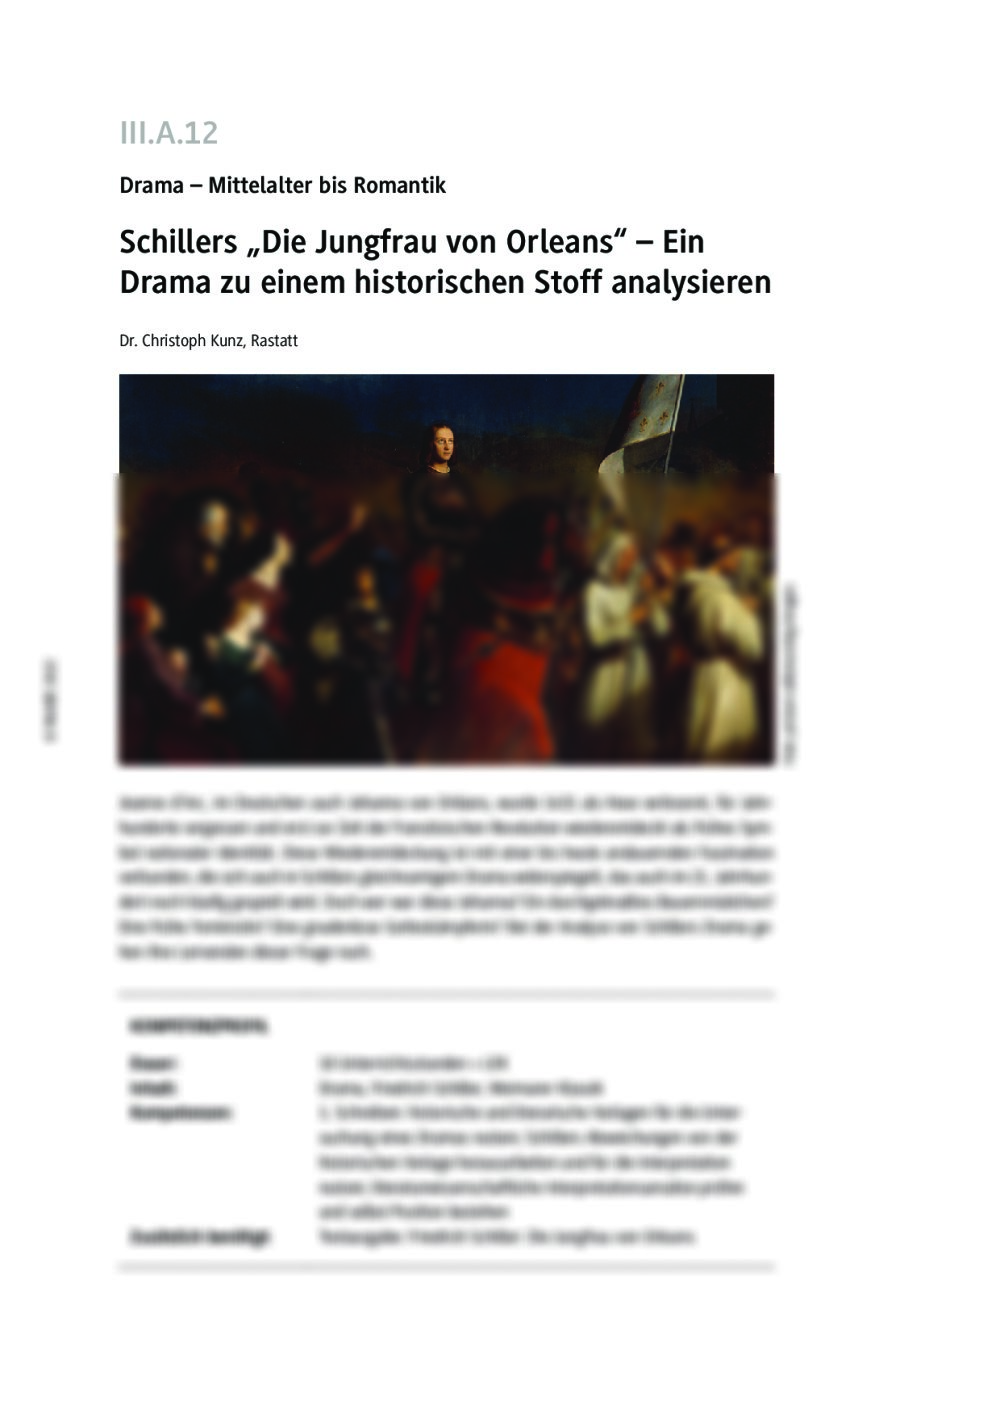 Schillers "Die Jungfrau von Orleans" - Seite 1